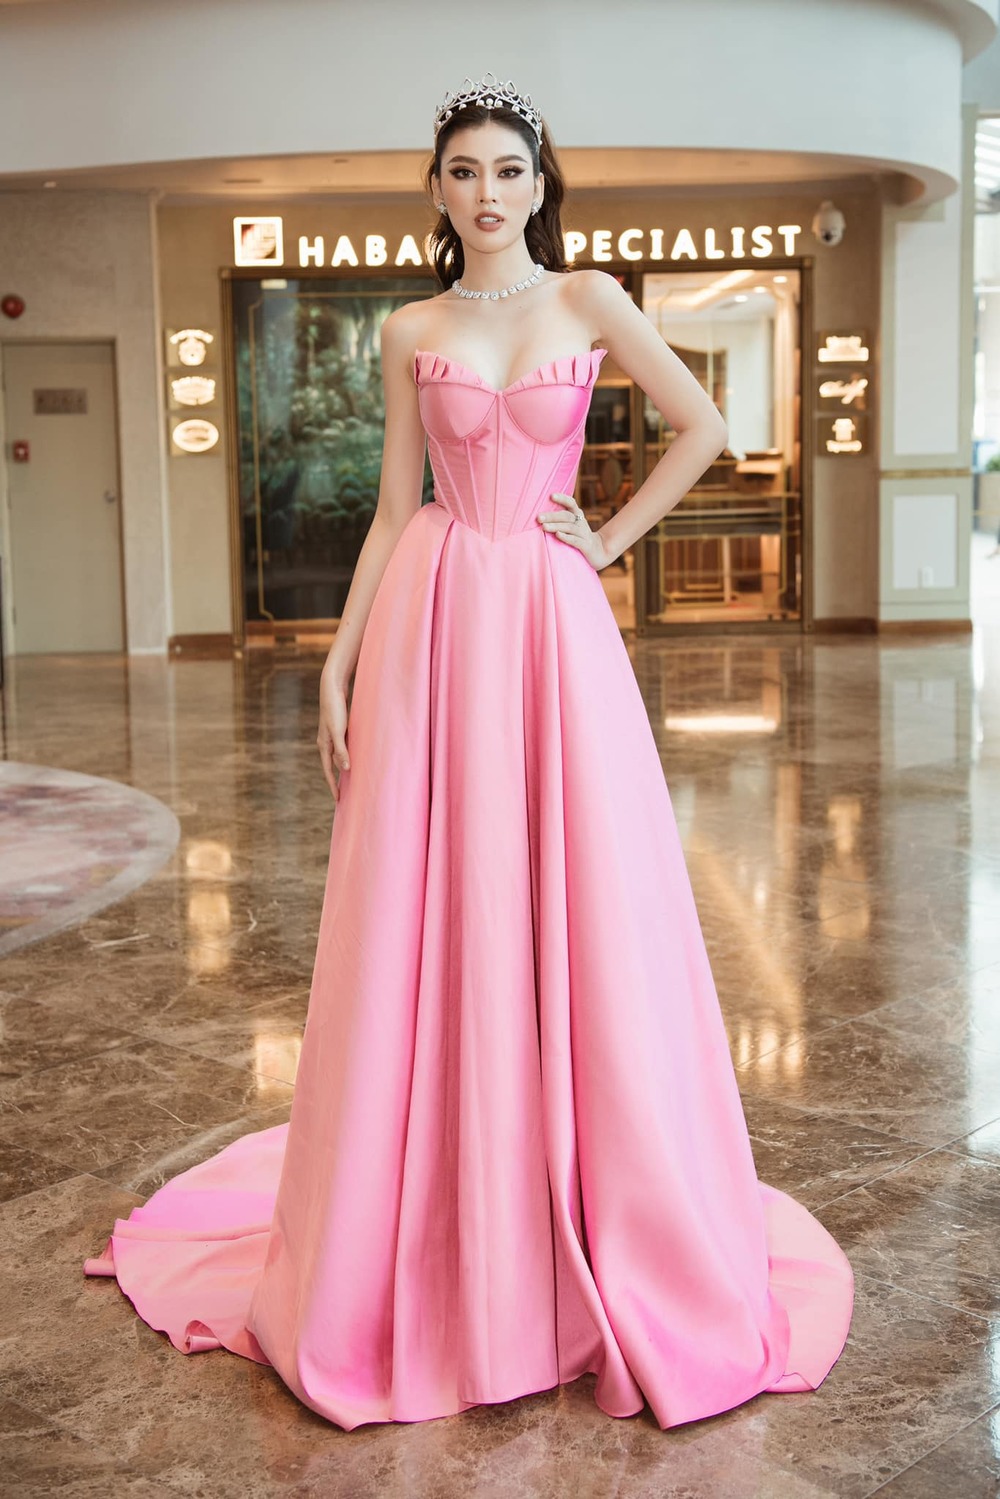  
Chiếc đầm hồng style "công chúa" của NTK Lê Ngọc Lâm giúp Á hậu chiếm vị trí trung tâm của sự kiện. (Ảnh: FB Lê Ngọc Lâm)